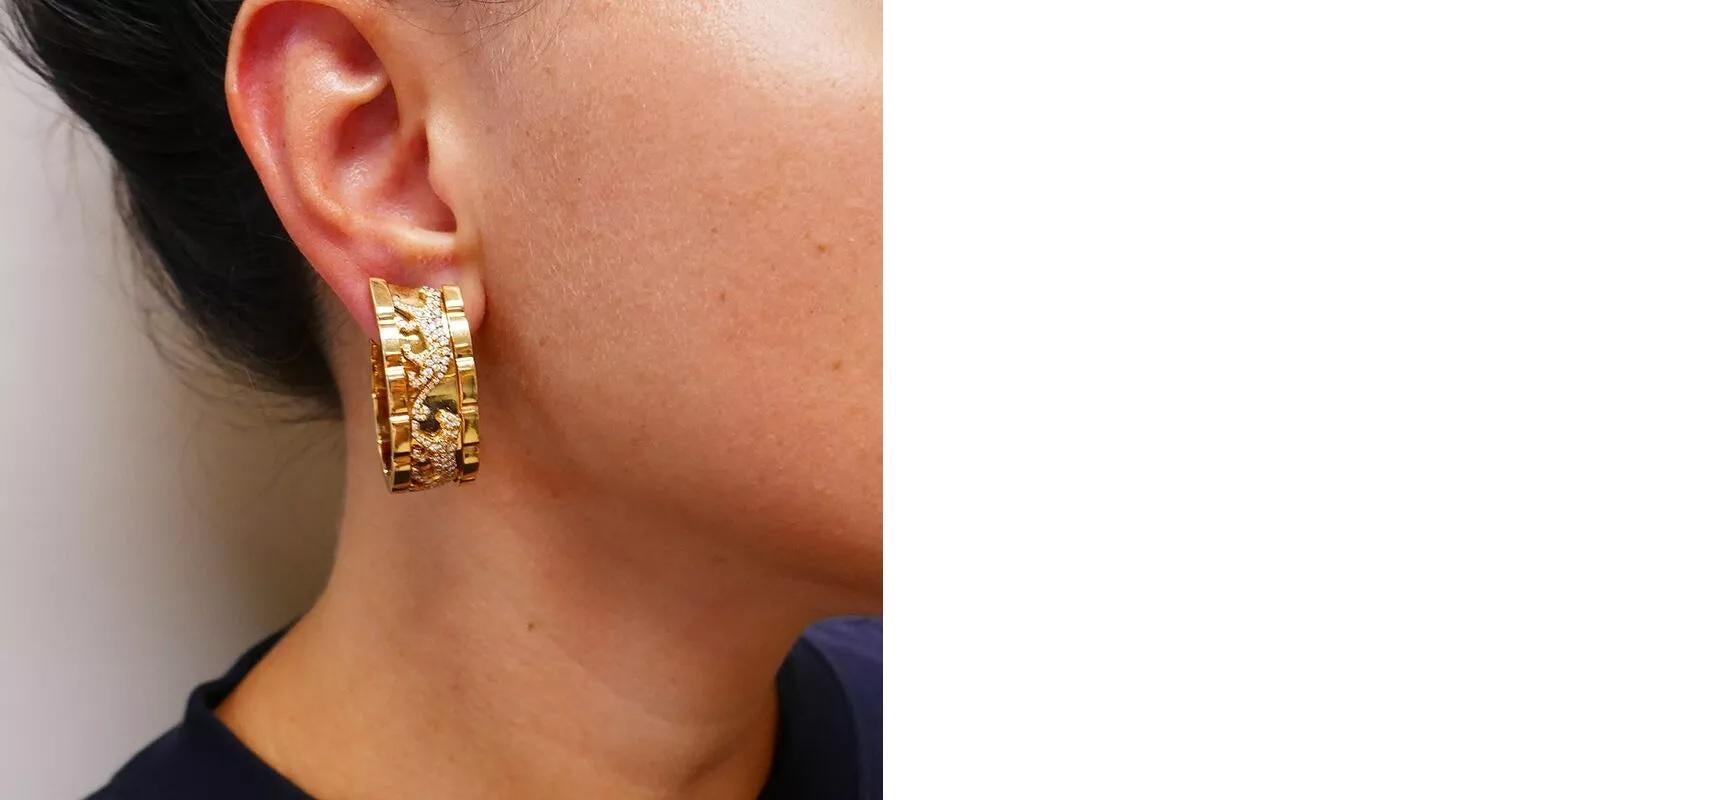 Les boucles d'oreilles Panthère de Cartier, une véritable icône dans le monde de la joaillerie de luxe. 

Réalisées en or jaune 18 carats, ces boucles d'oreilles sont conçues comme de larges arceaux, représentant délicatement des panthères